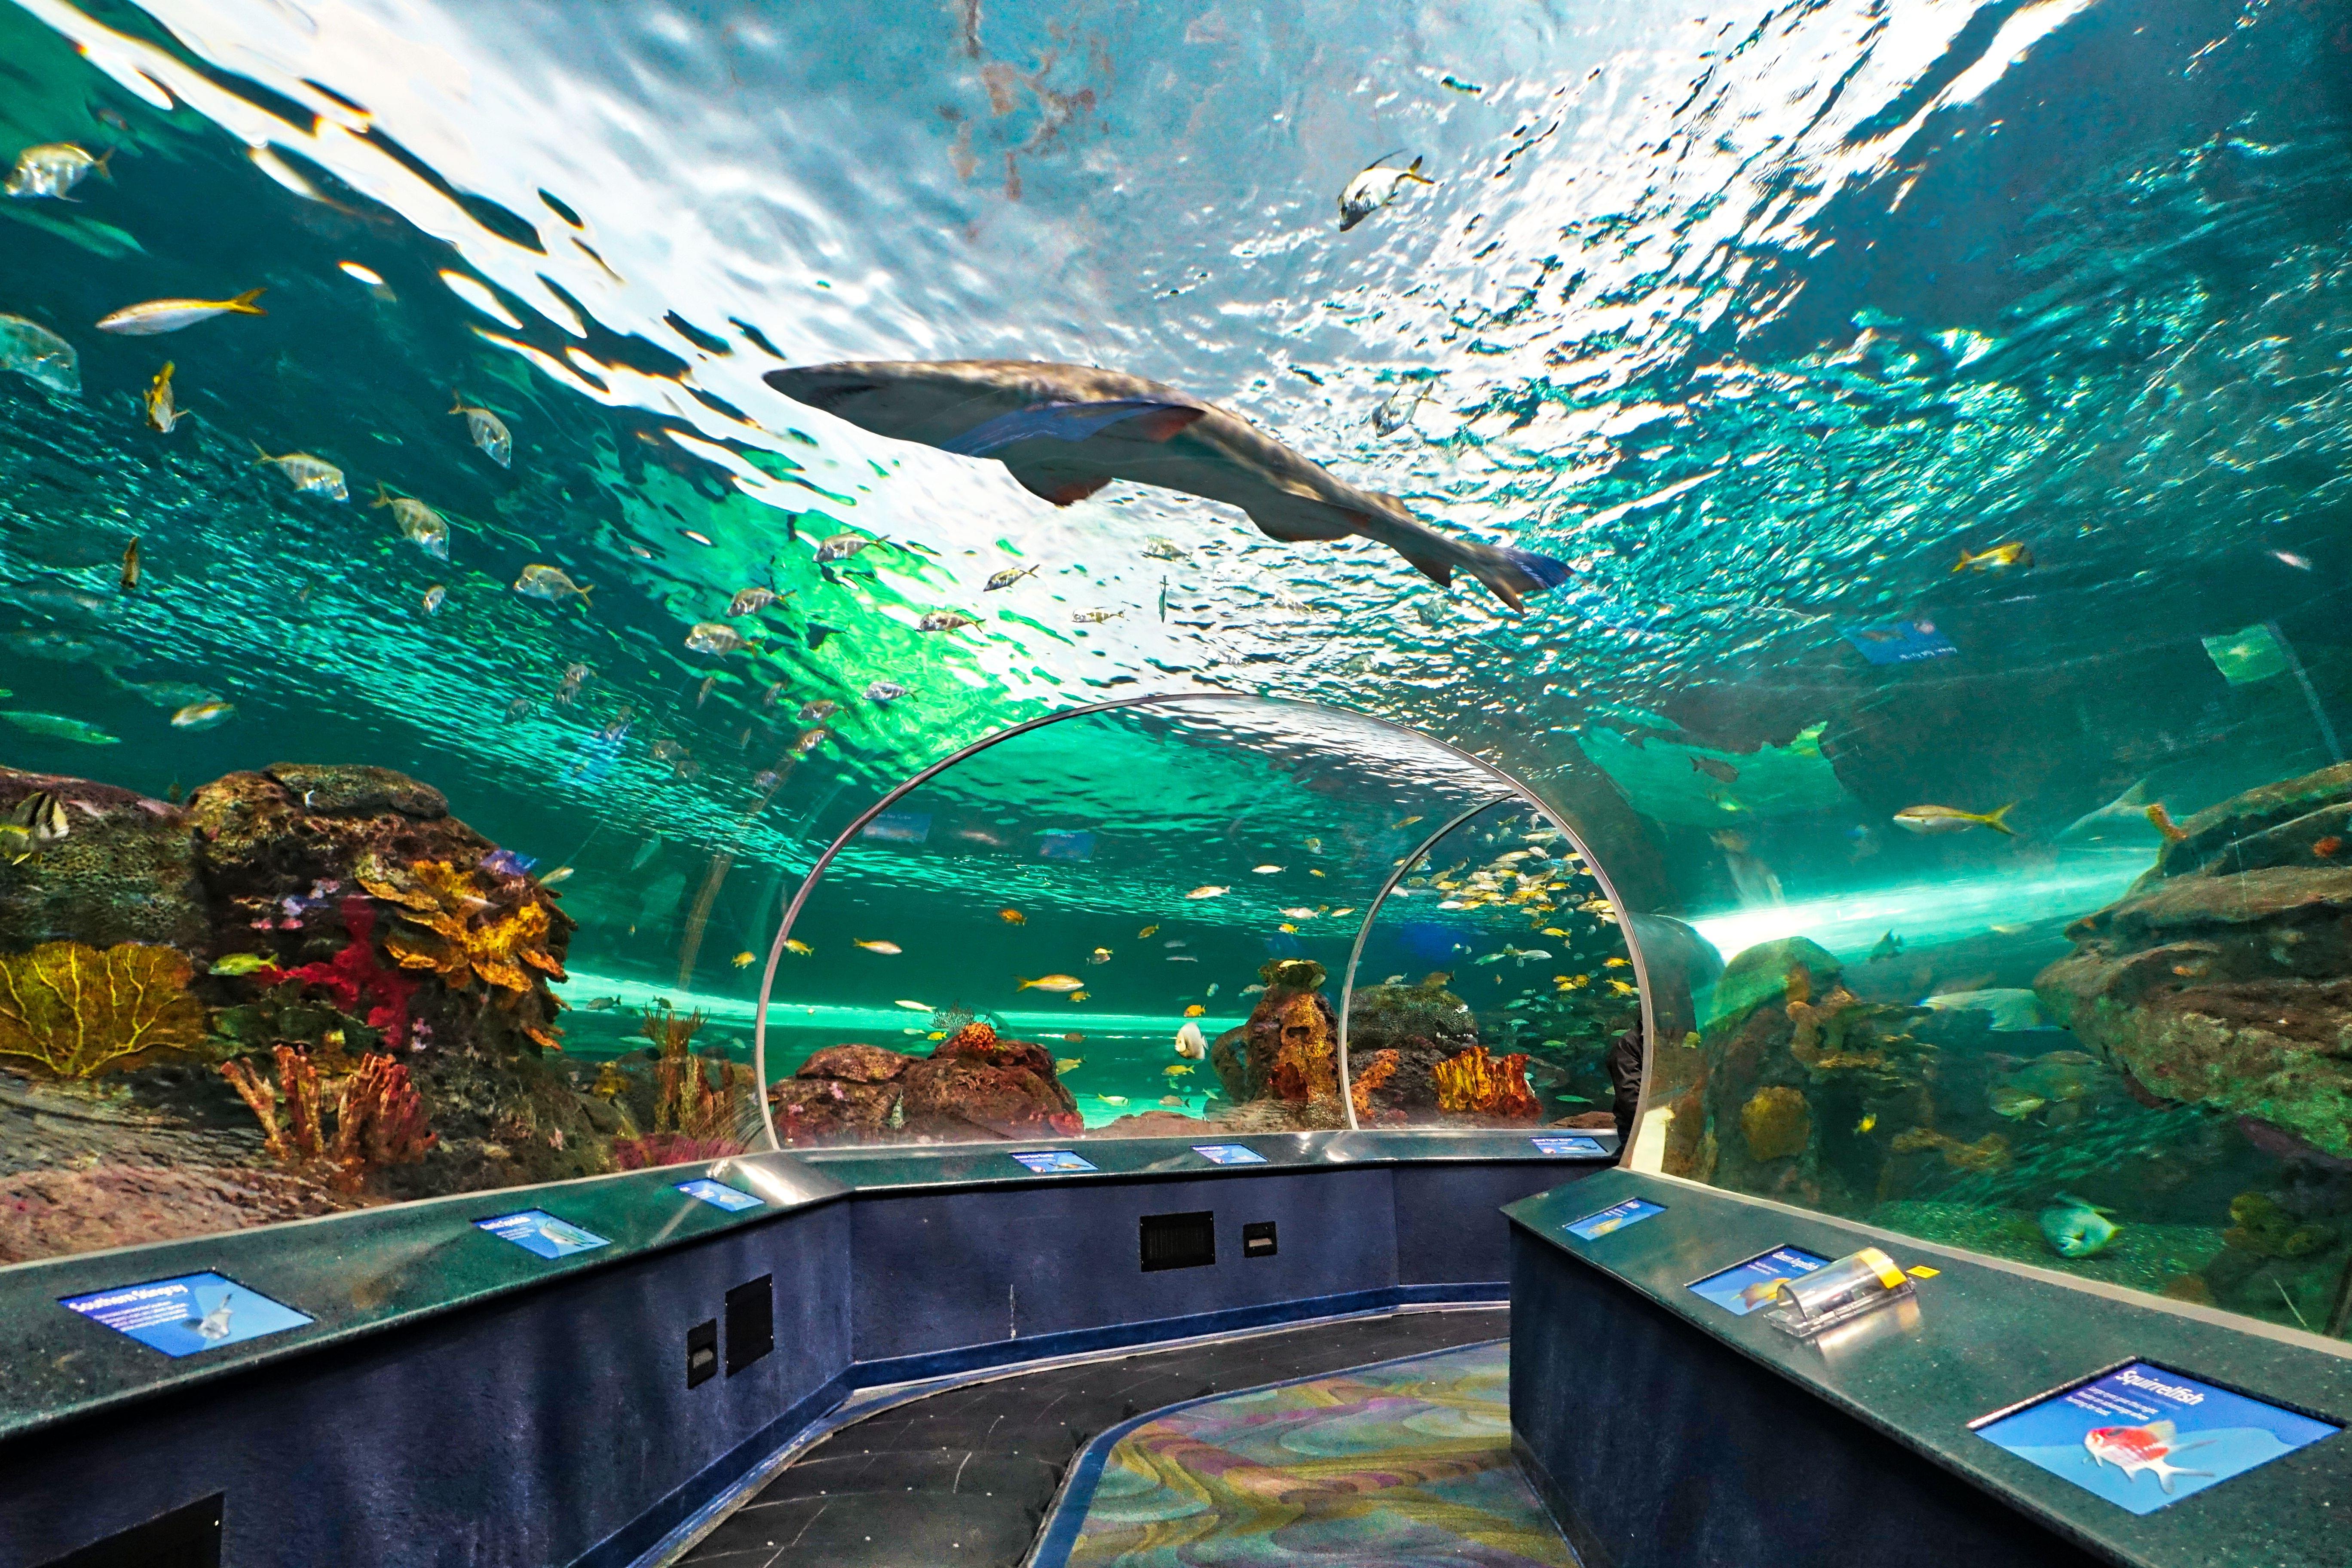 Aquariums in Canada